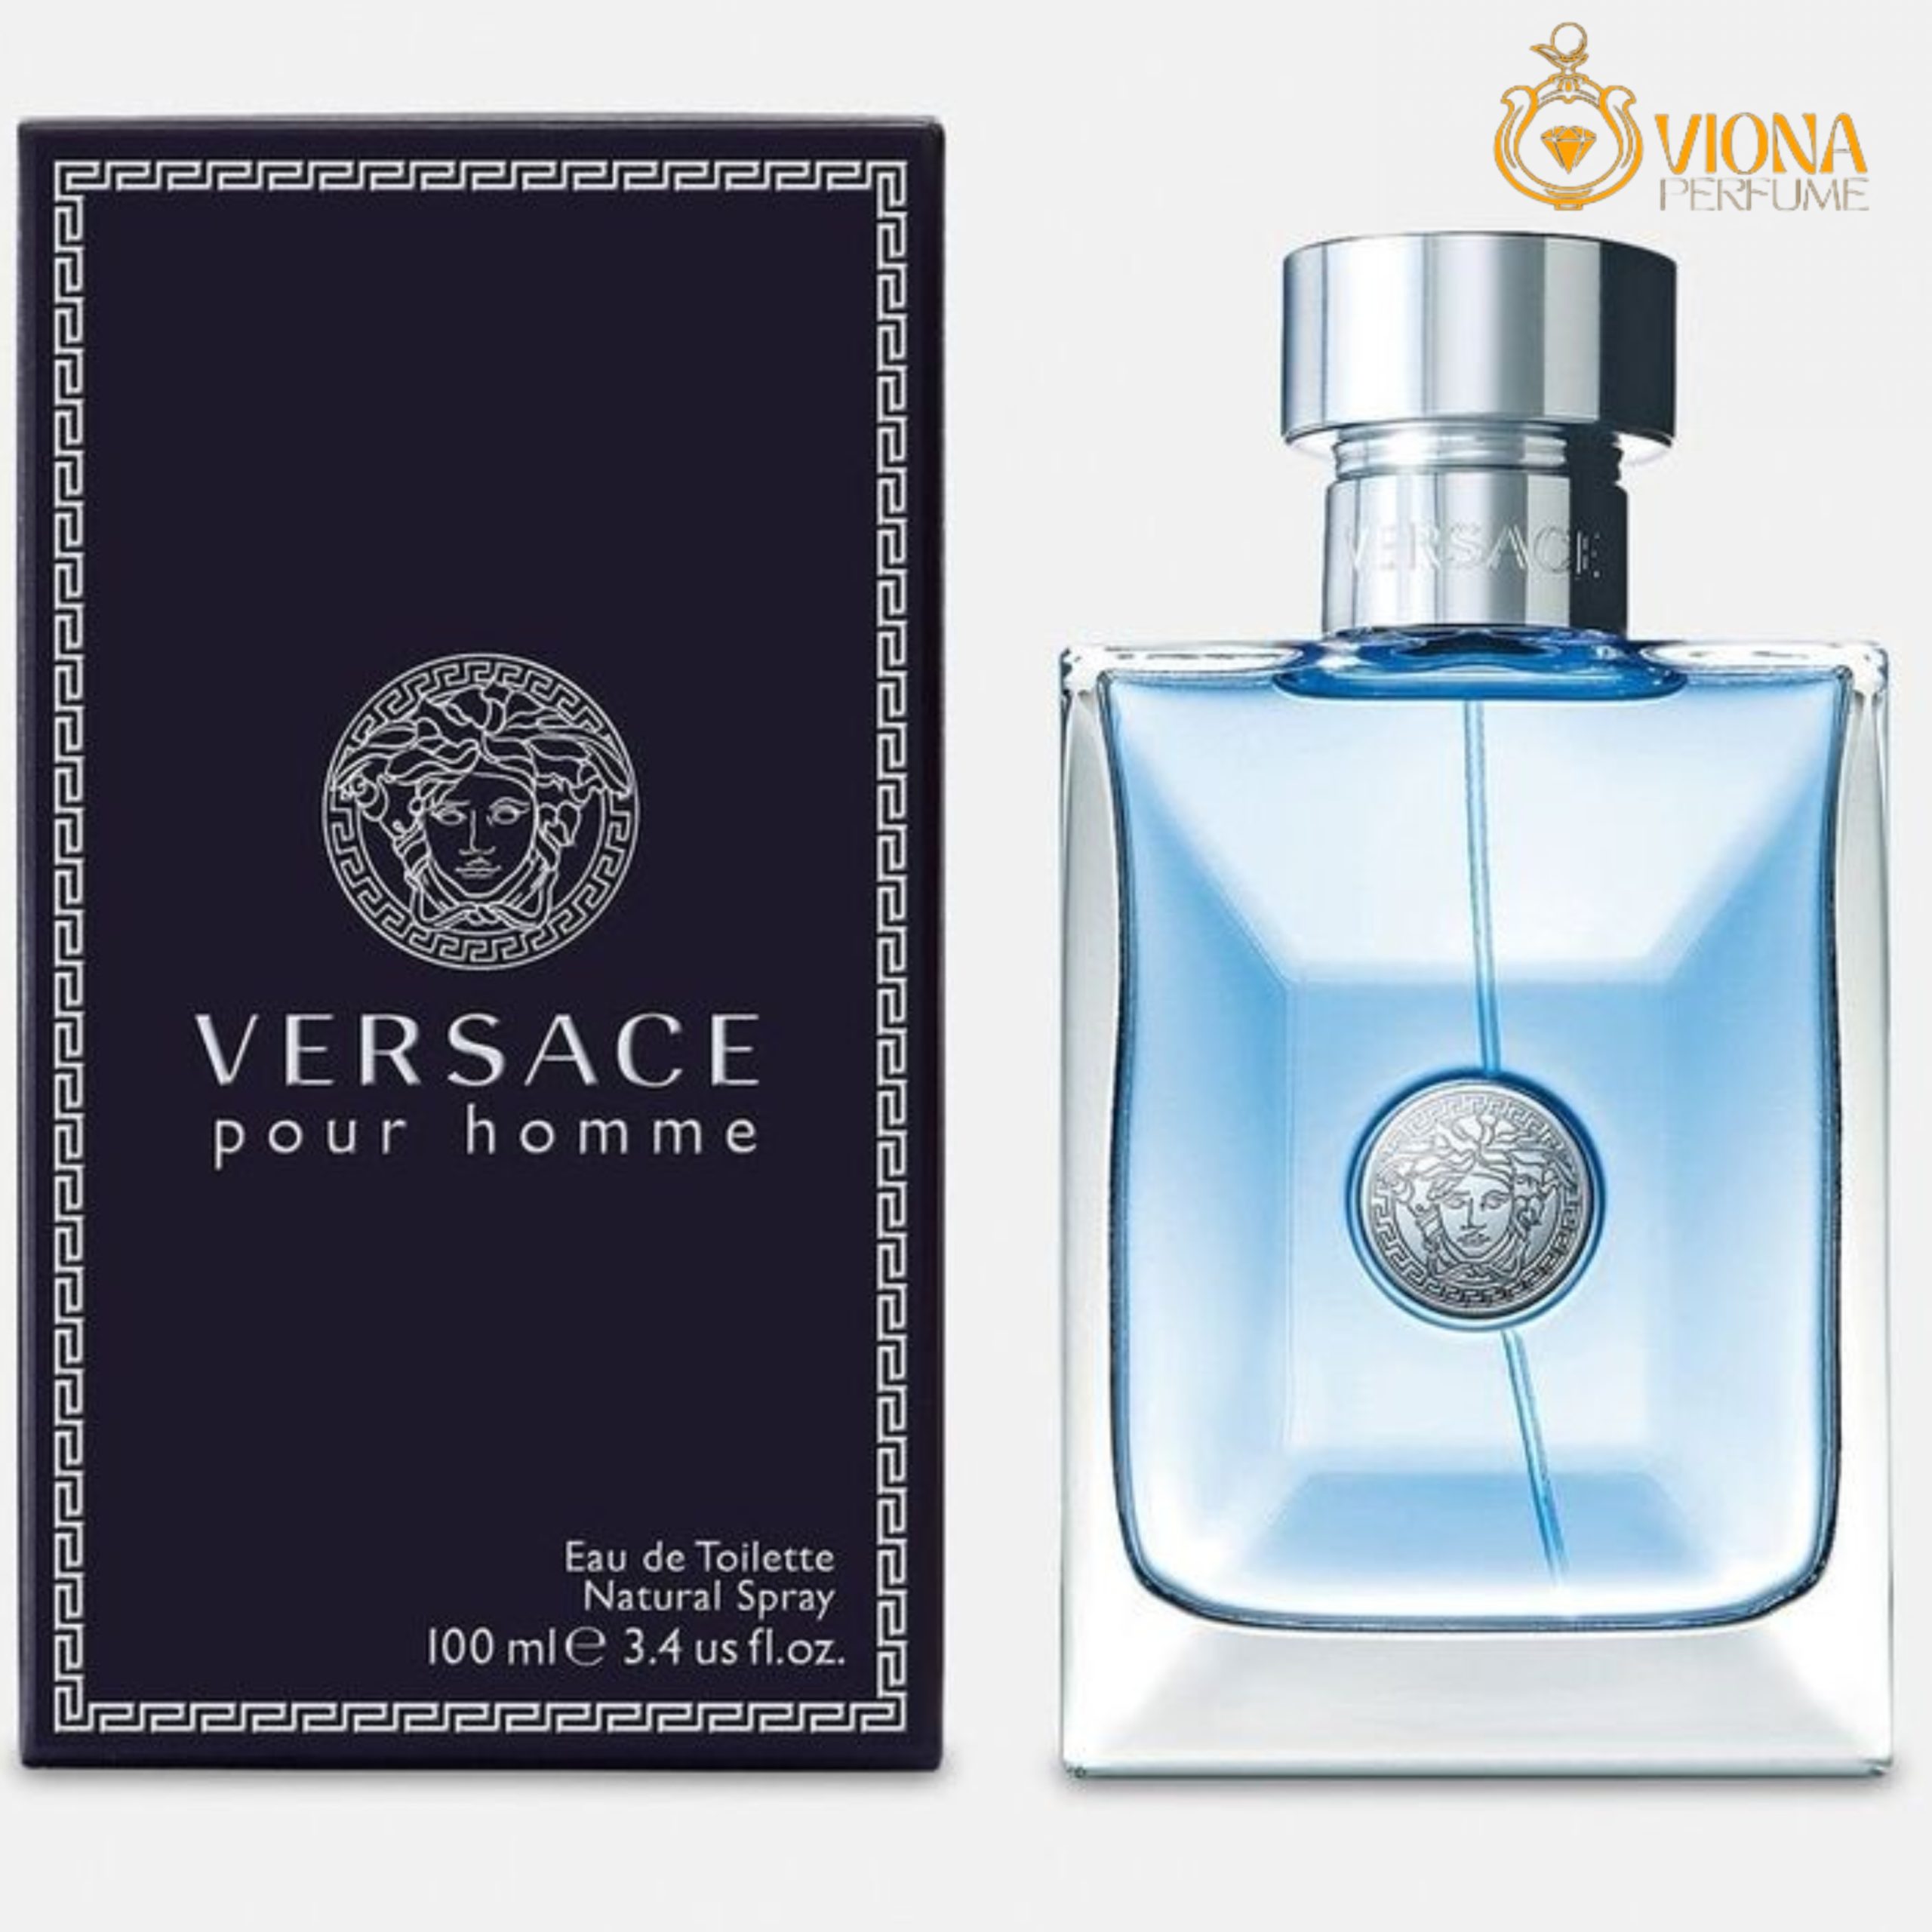 ورساچه پور هوم (Versace Pour Homme)